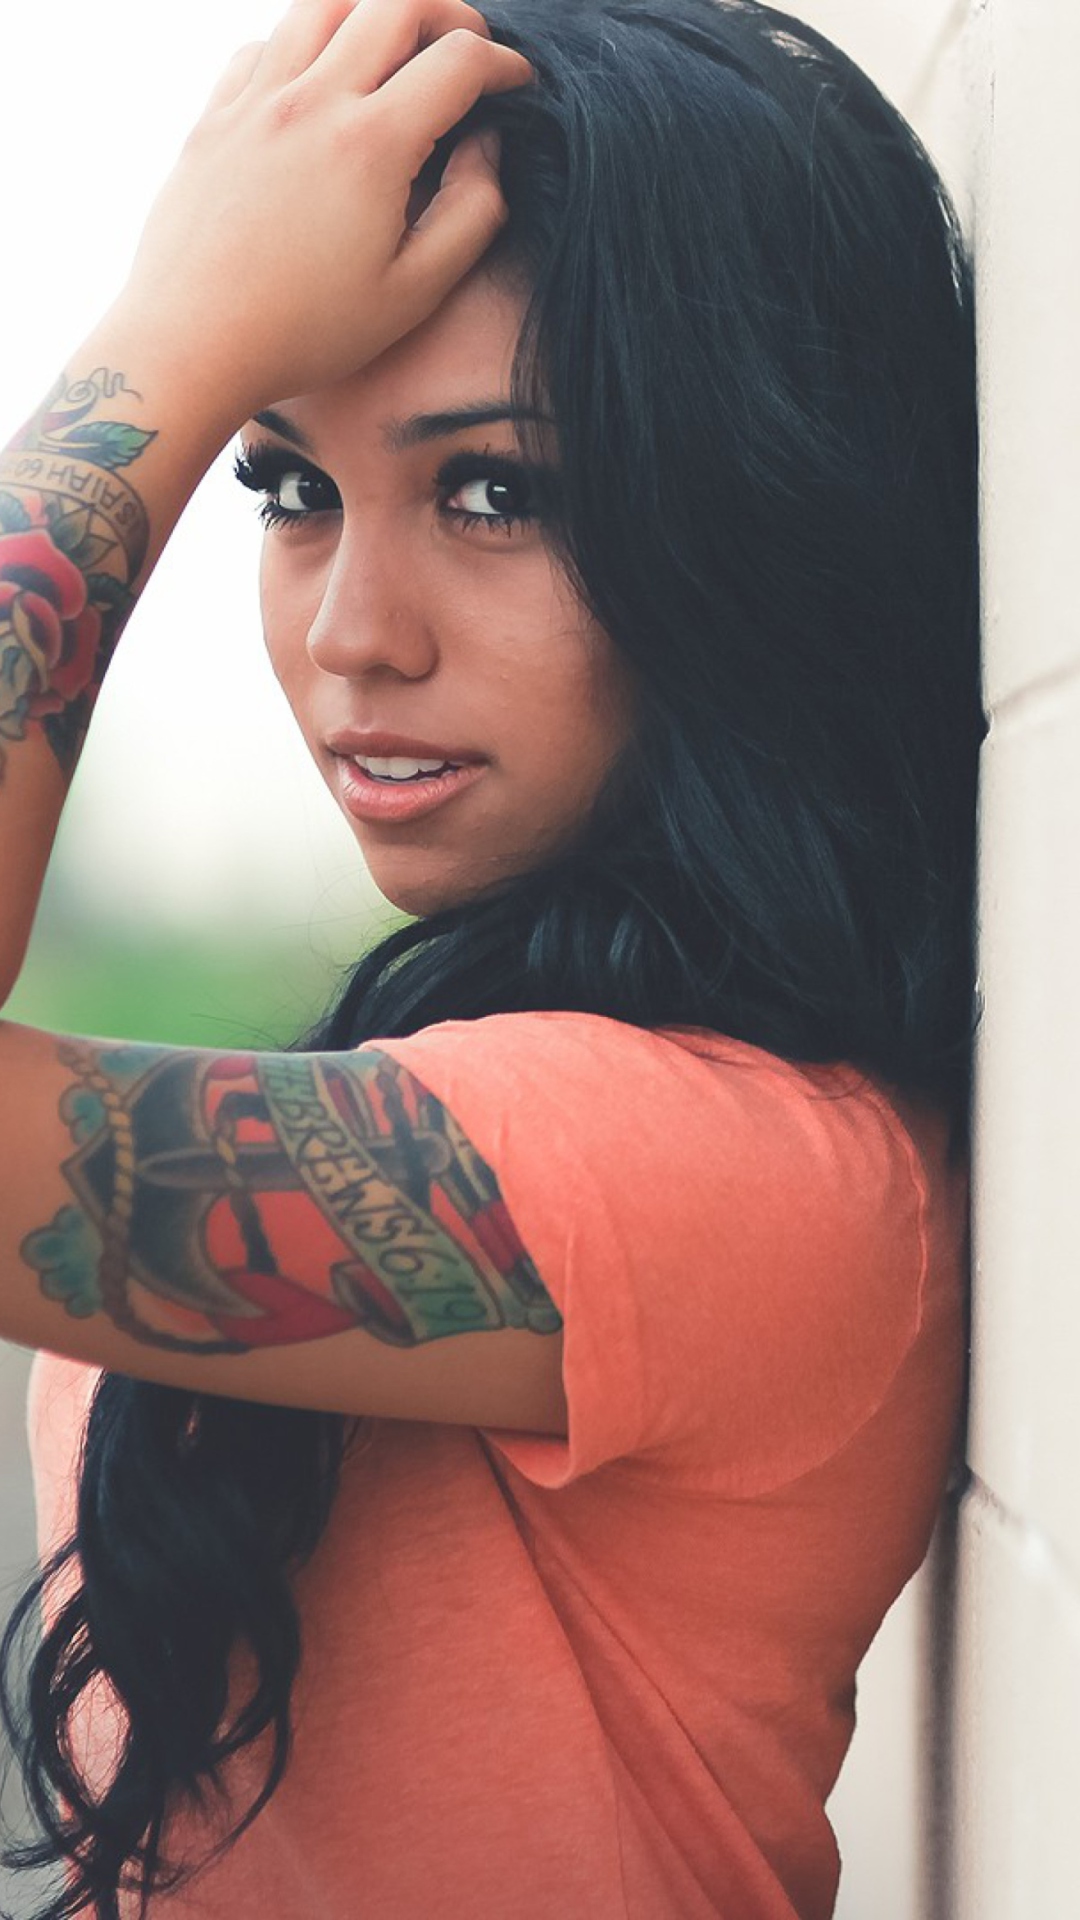 Beautiful Latin American Model With Tattoos screenshot #1 1080x1920